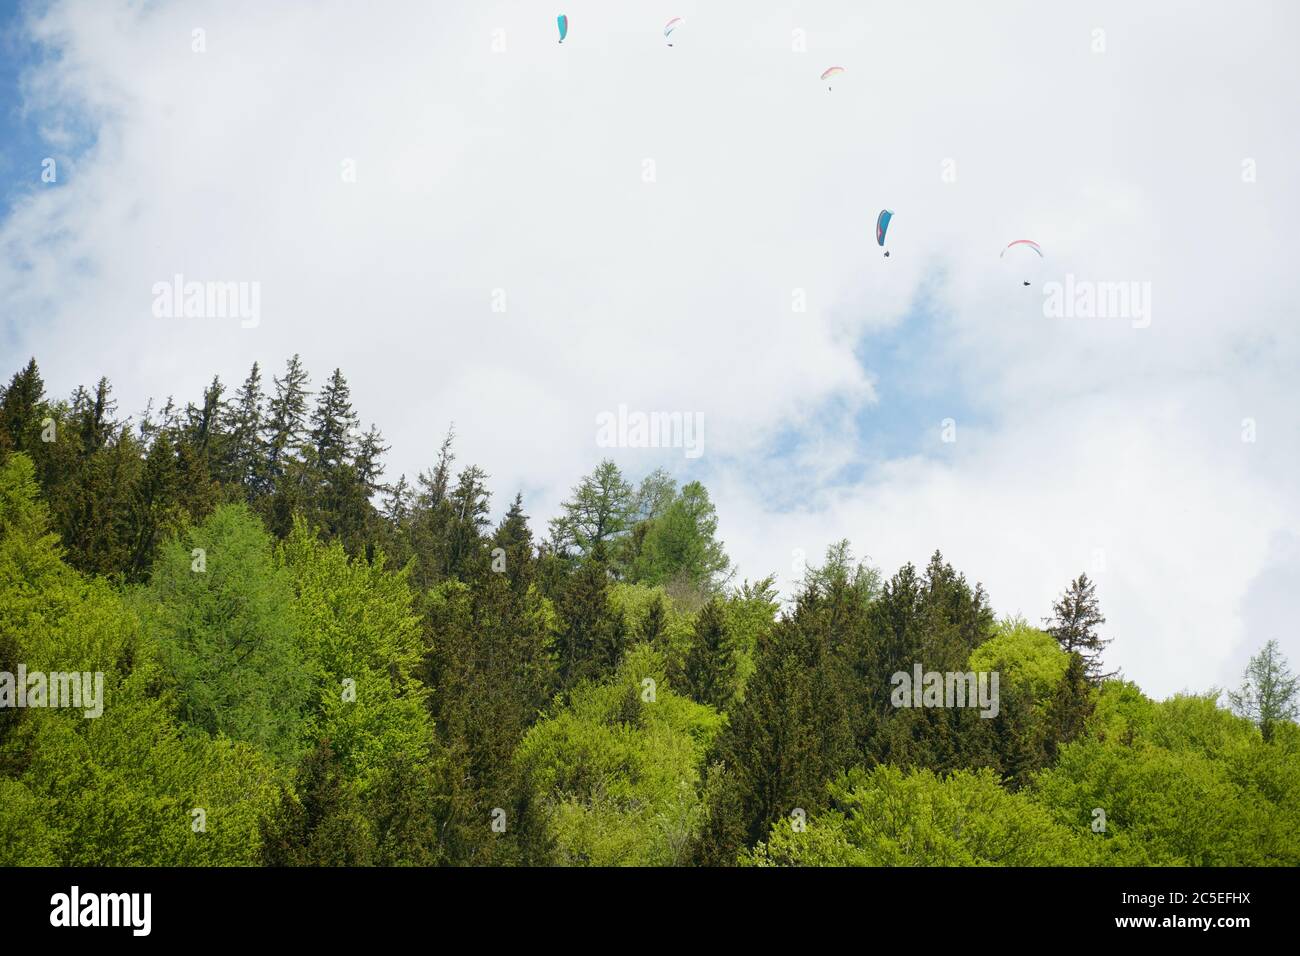 Mischwälder mit Gleitschirmfliegern, die unter dem wolkigen Himmel verstreut darüber fliegen. Der Wald ist von verschiedenen Schattierungen von Grün. Stockfoto